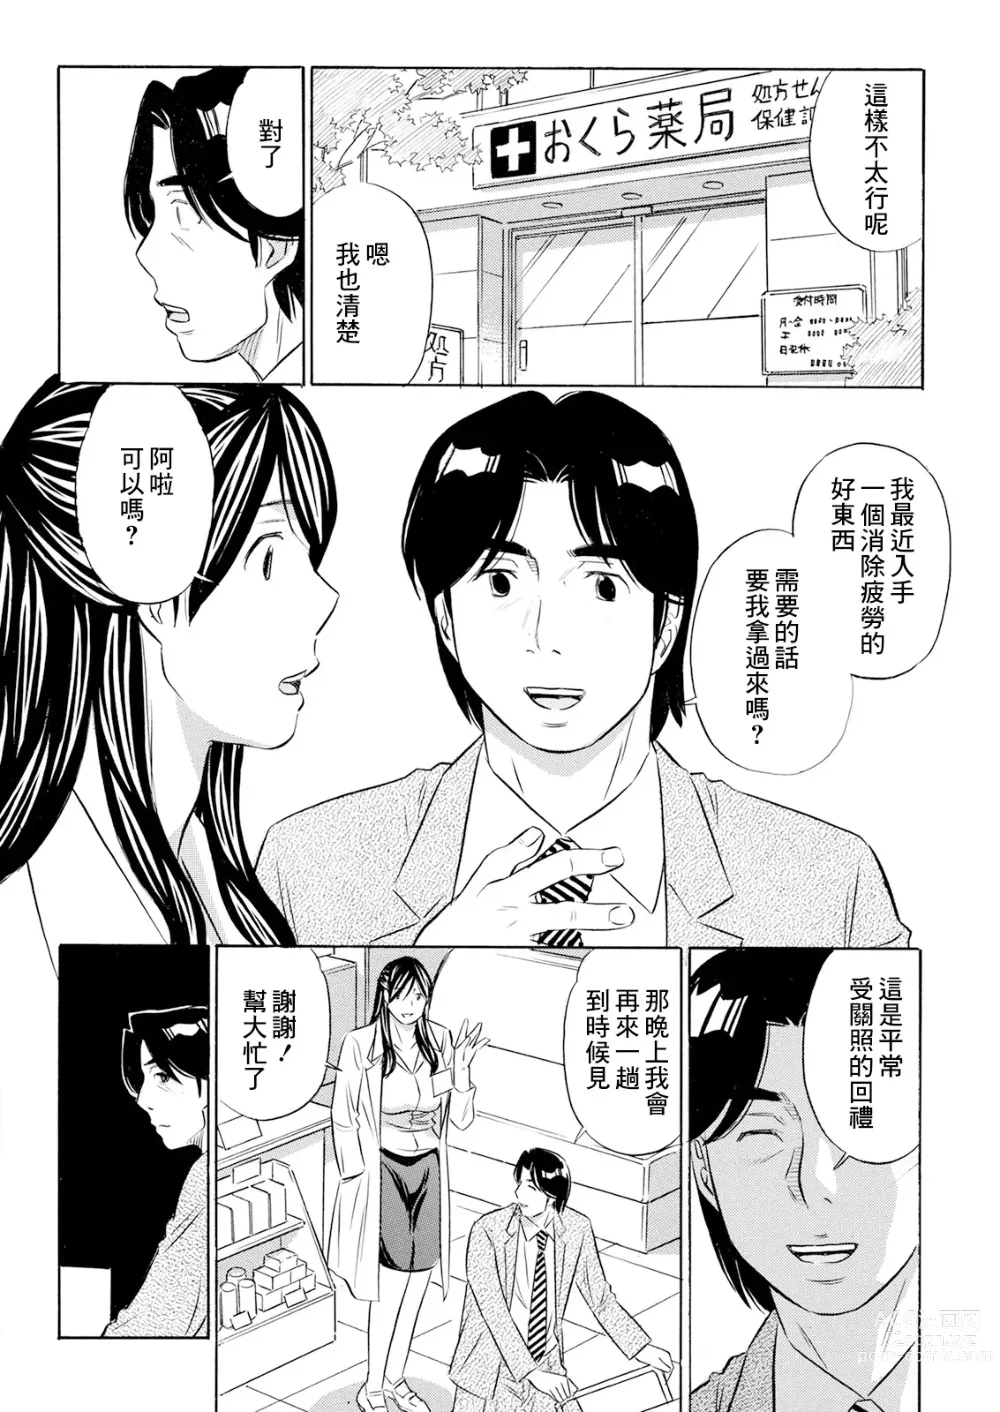 Page 4 of manga Biyaku Shohousen